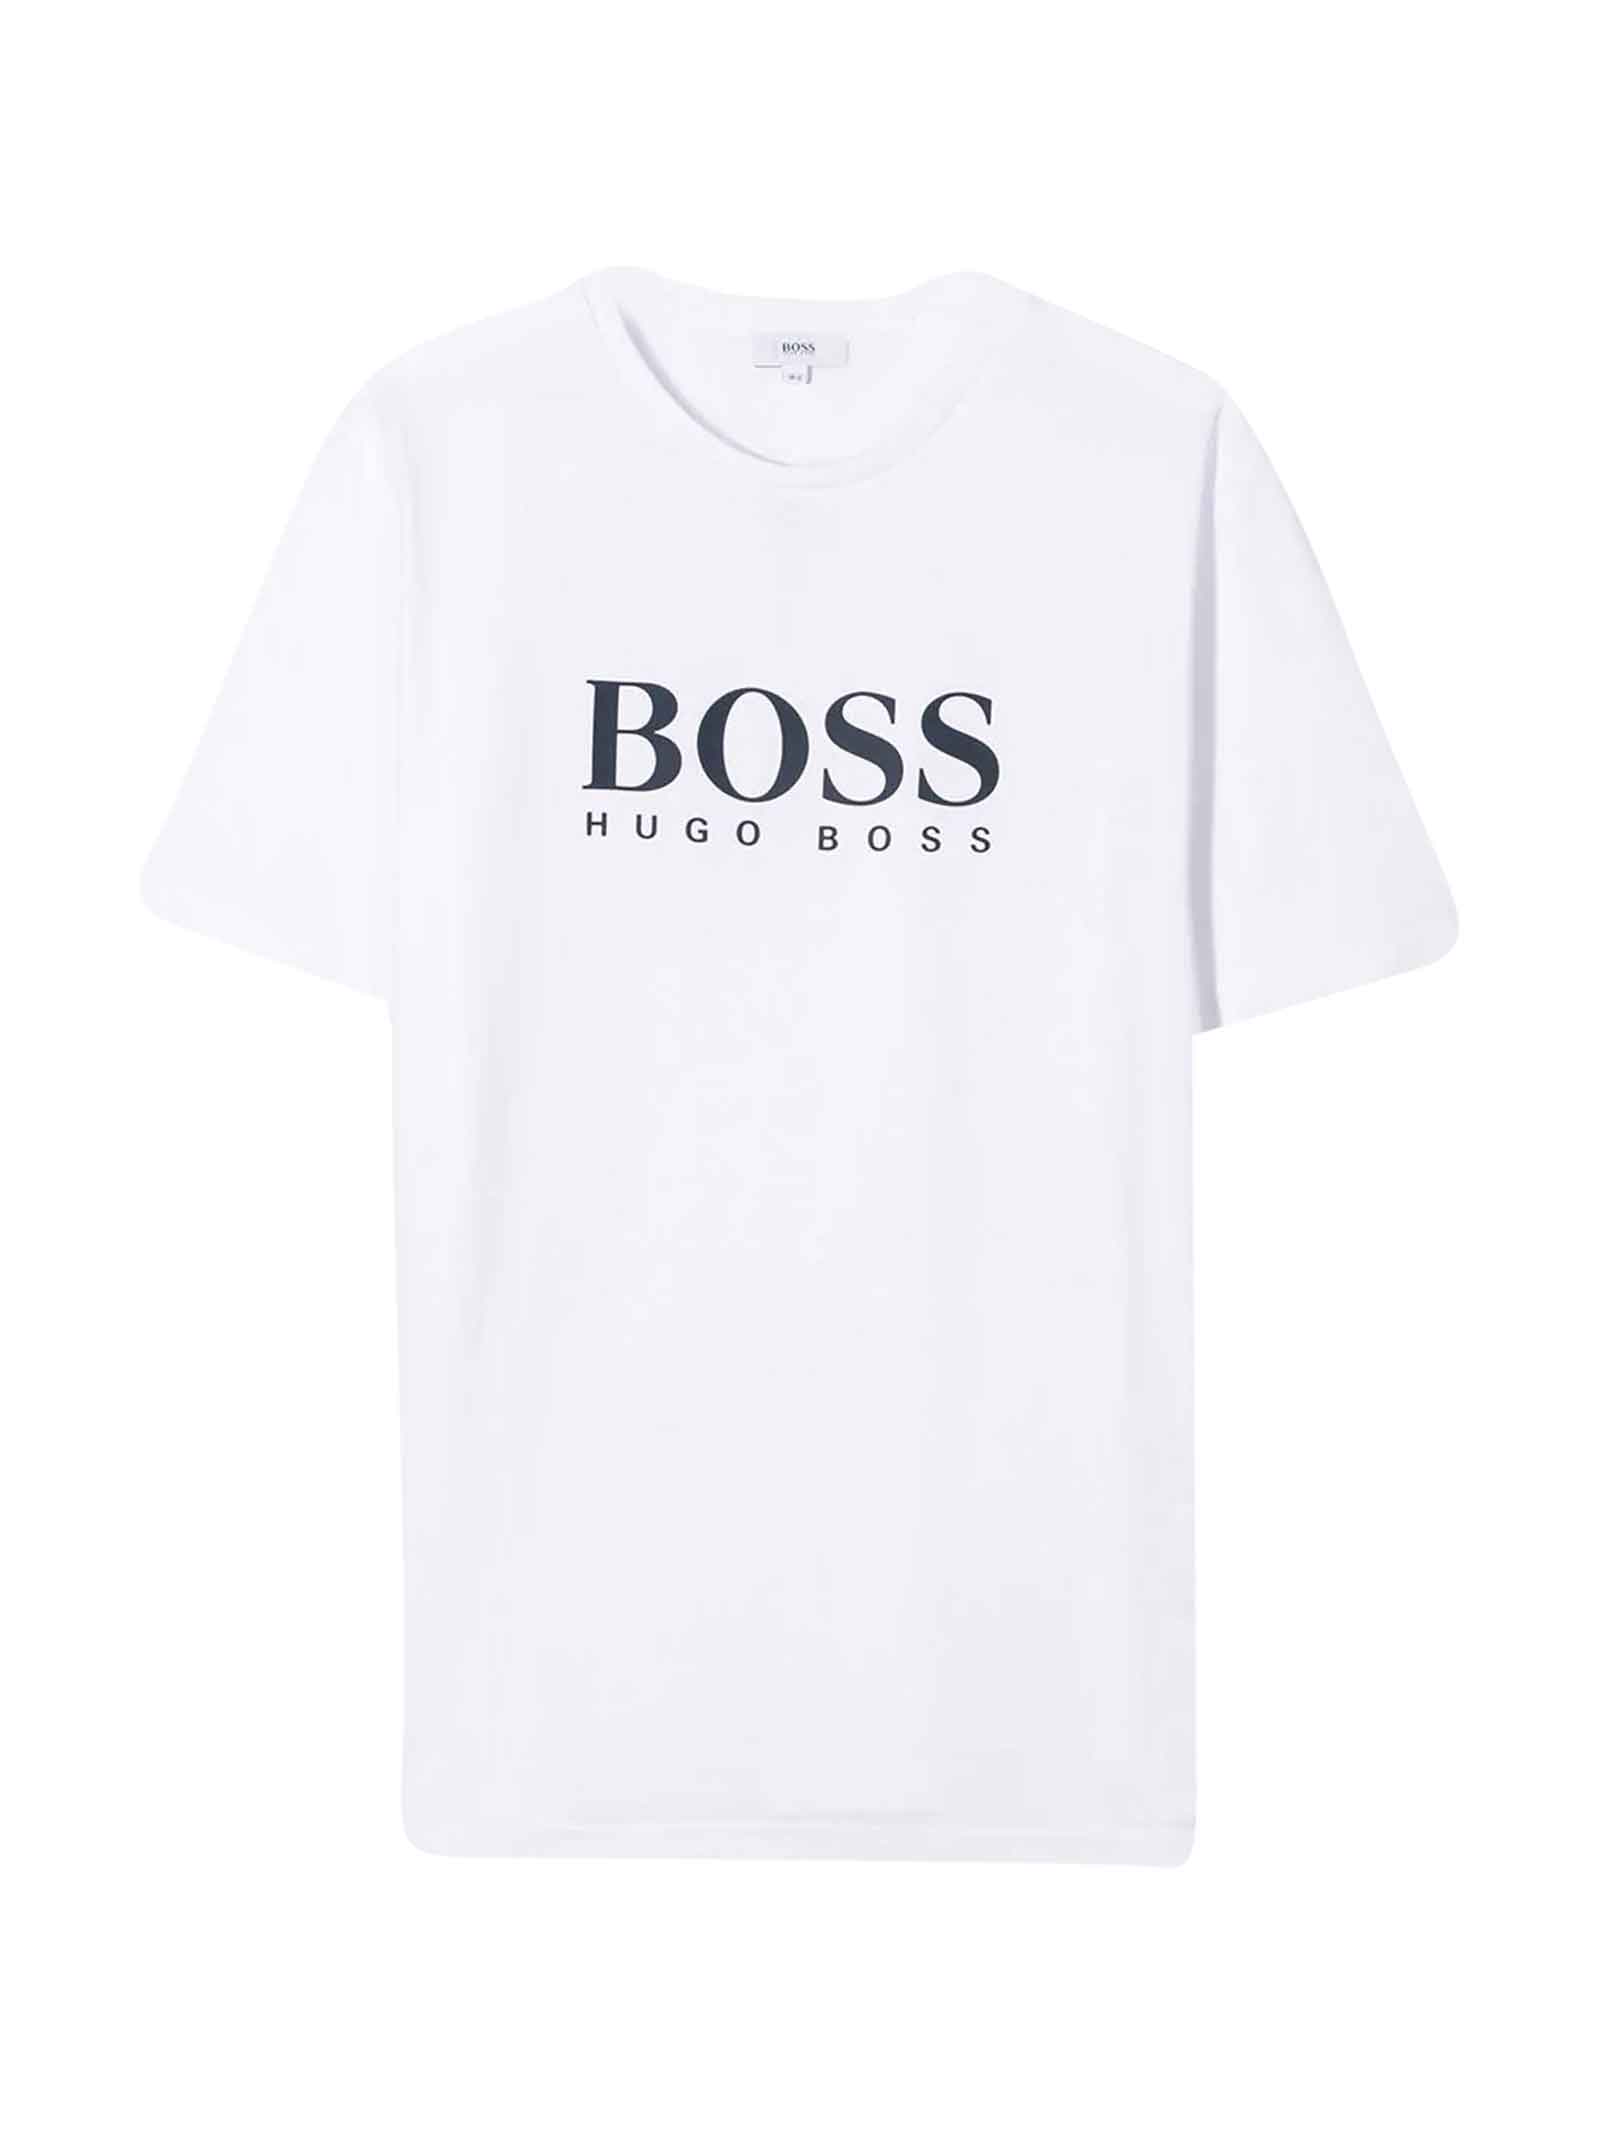 boss t-shirt men's sale